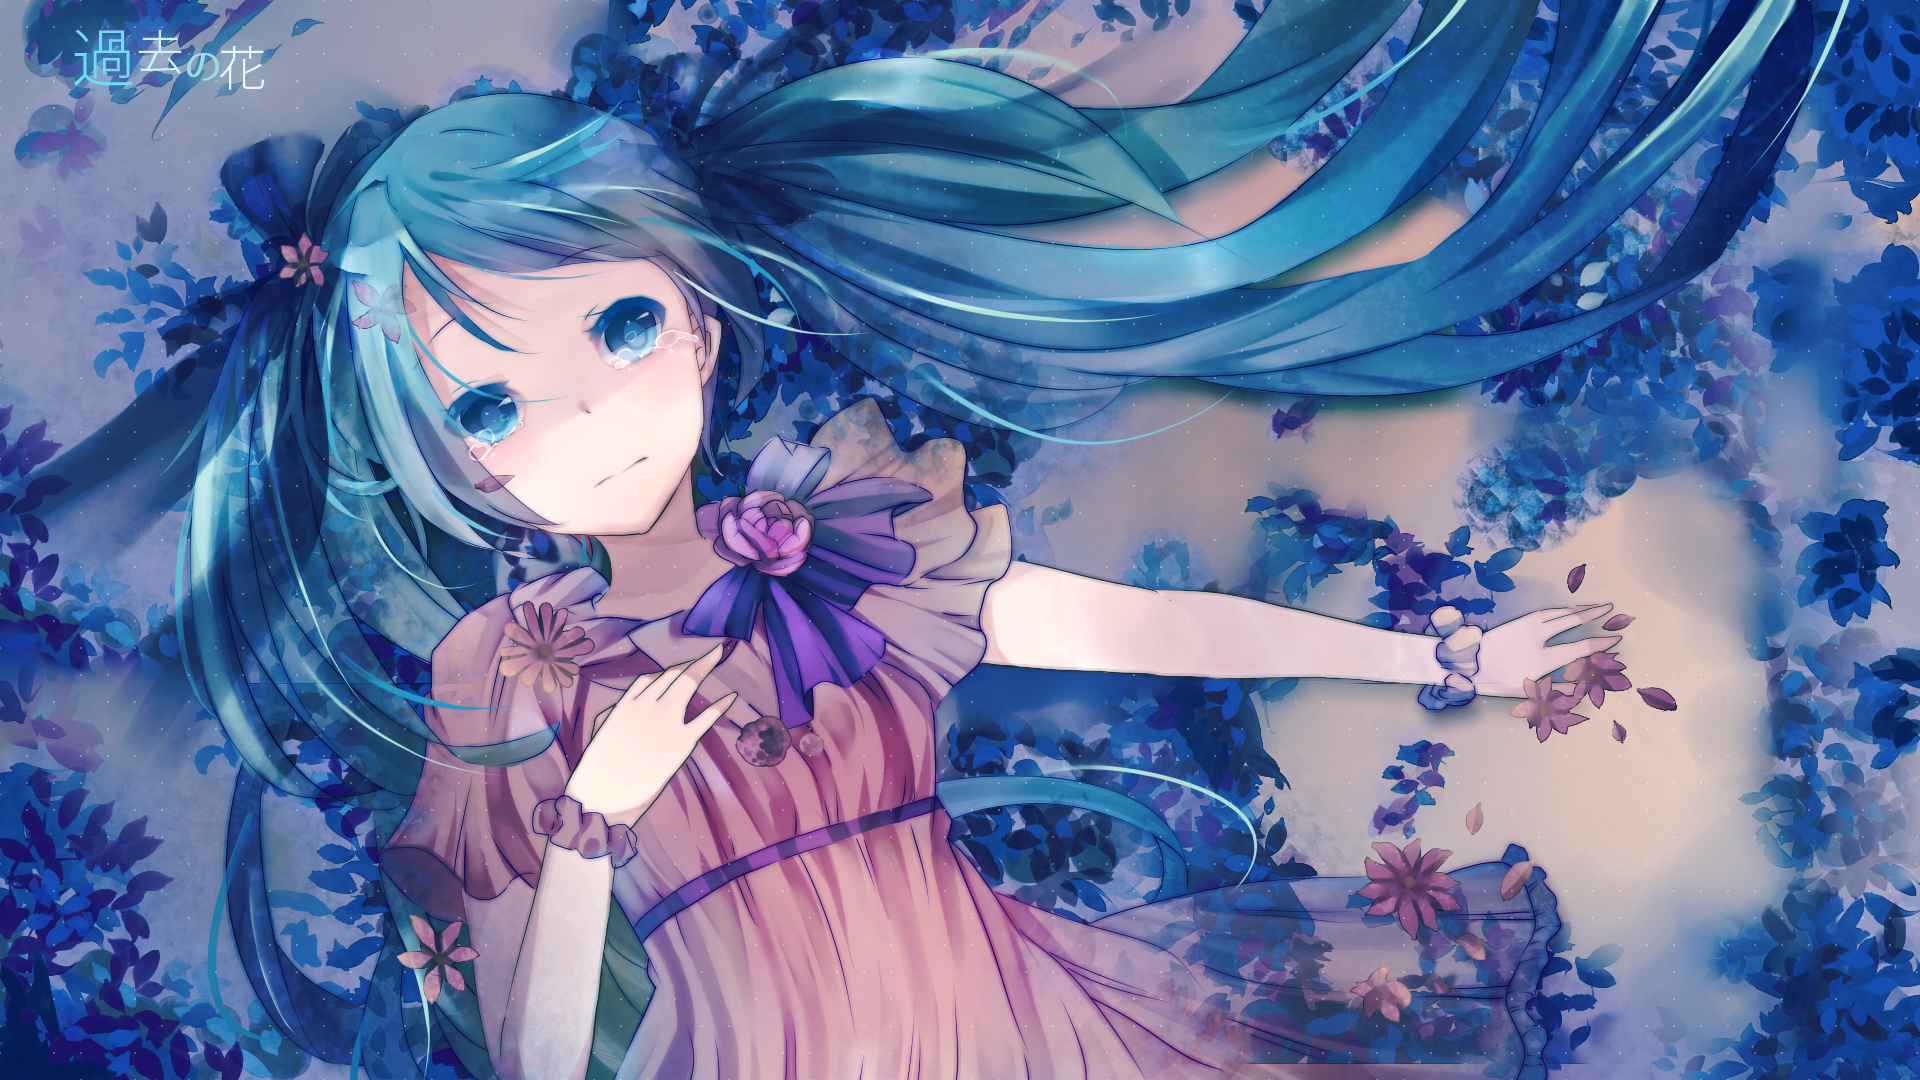 Vocaloid, dress, flowers, Hatsune Miku, blue eyes, tears, long hair, anime, flower petals, pink dress, anime girls - desktop wallpaper